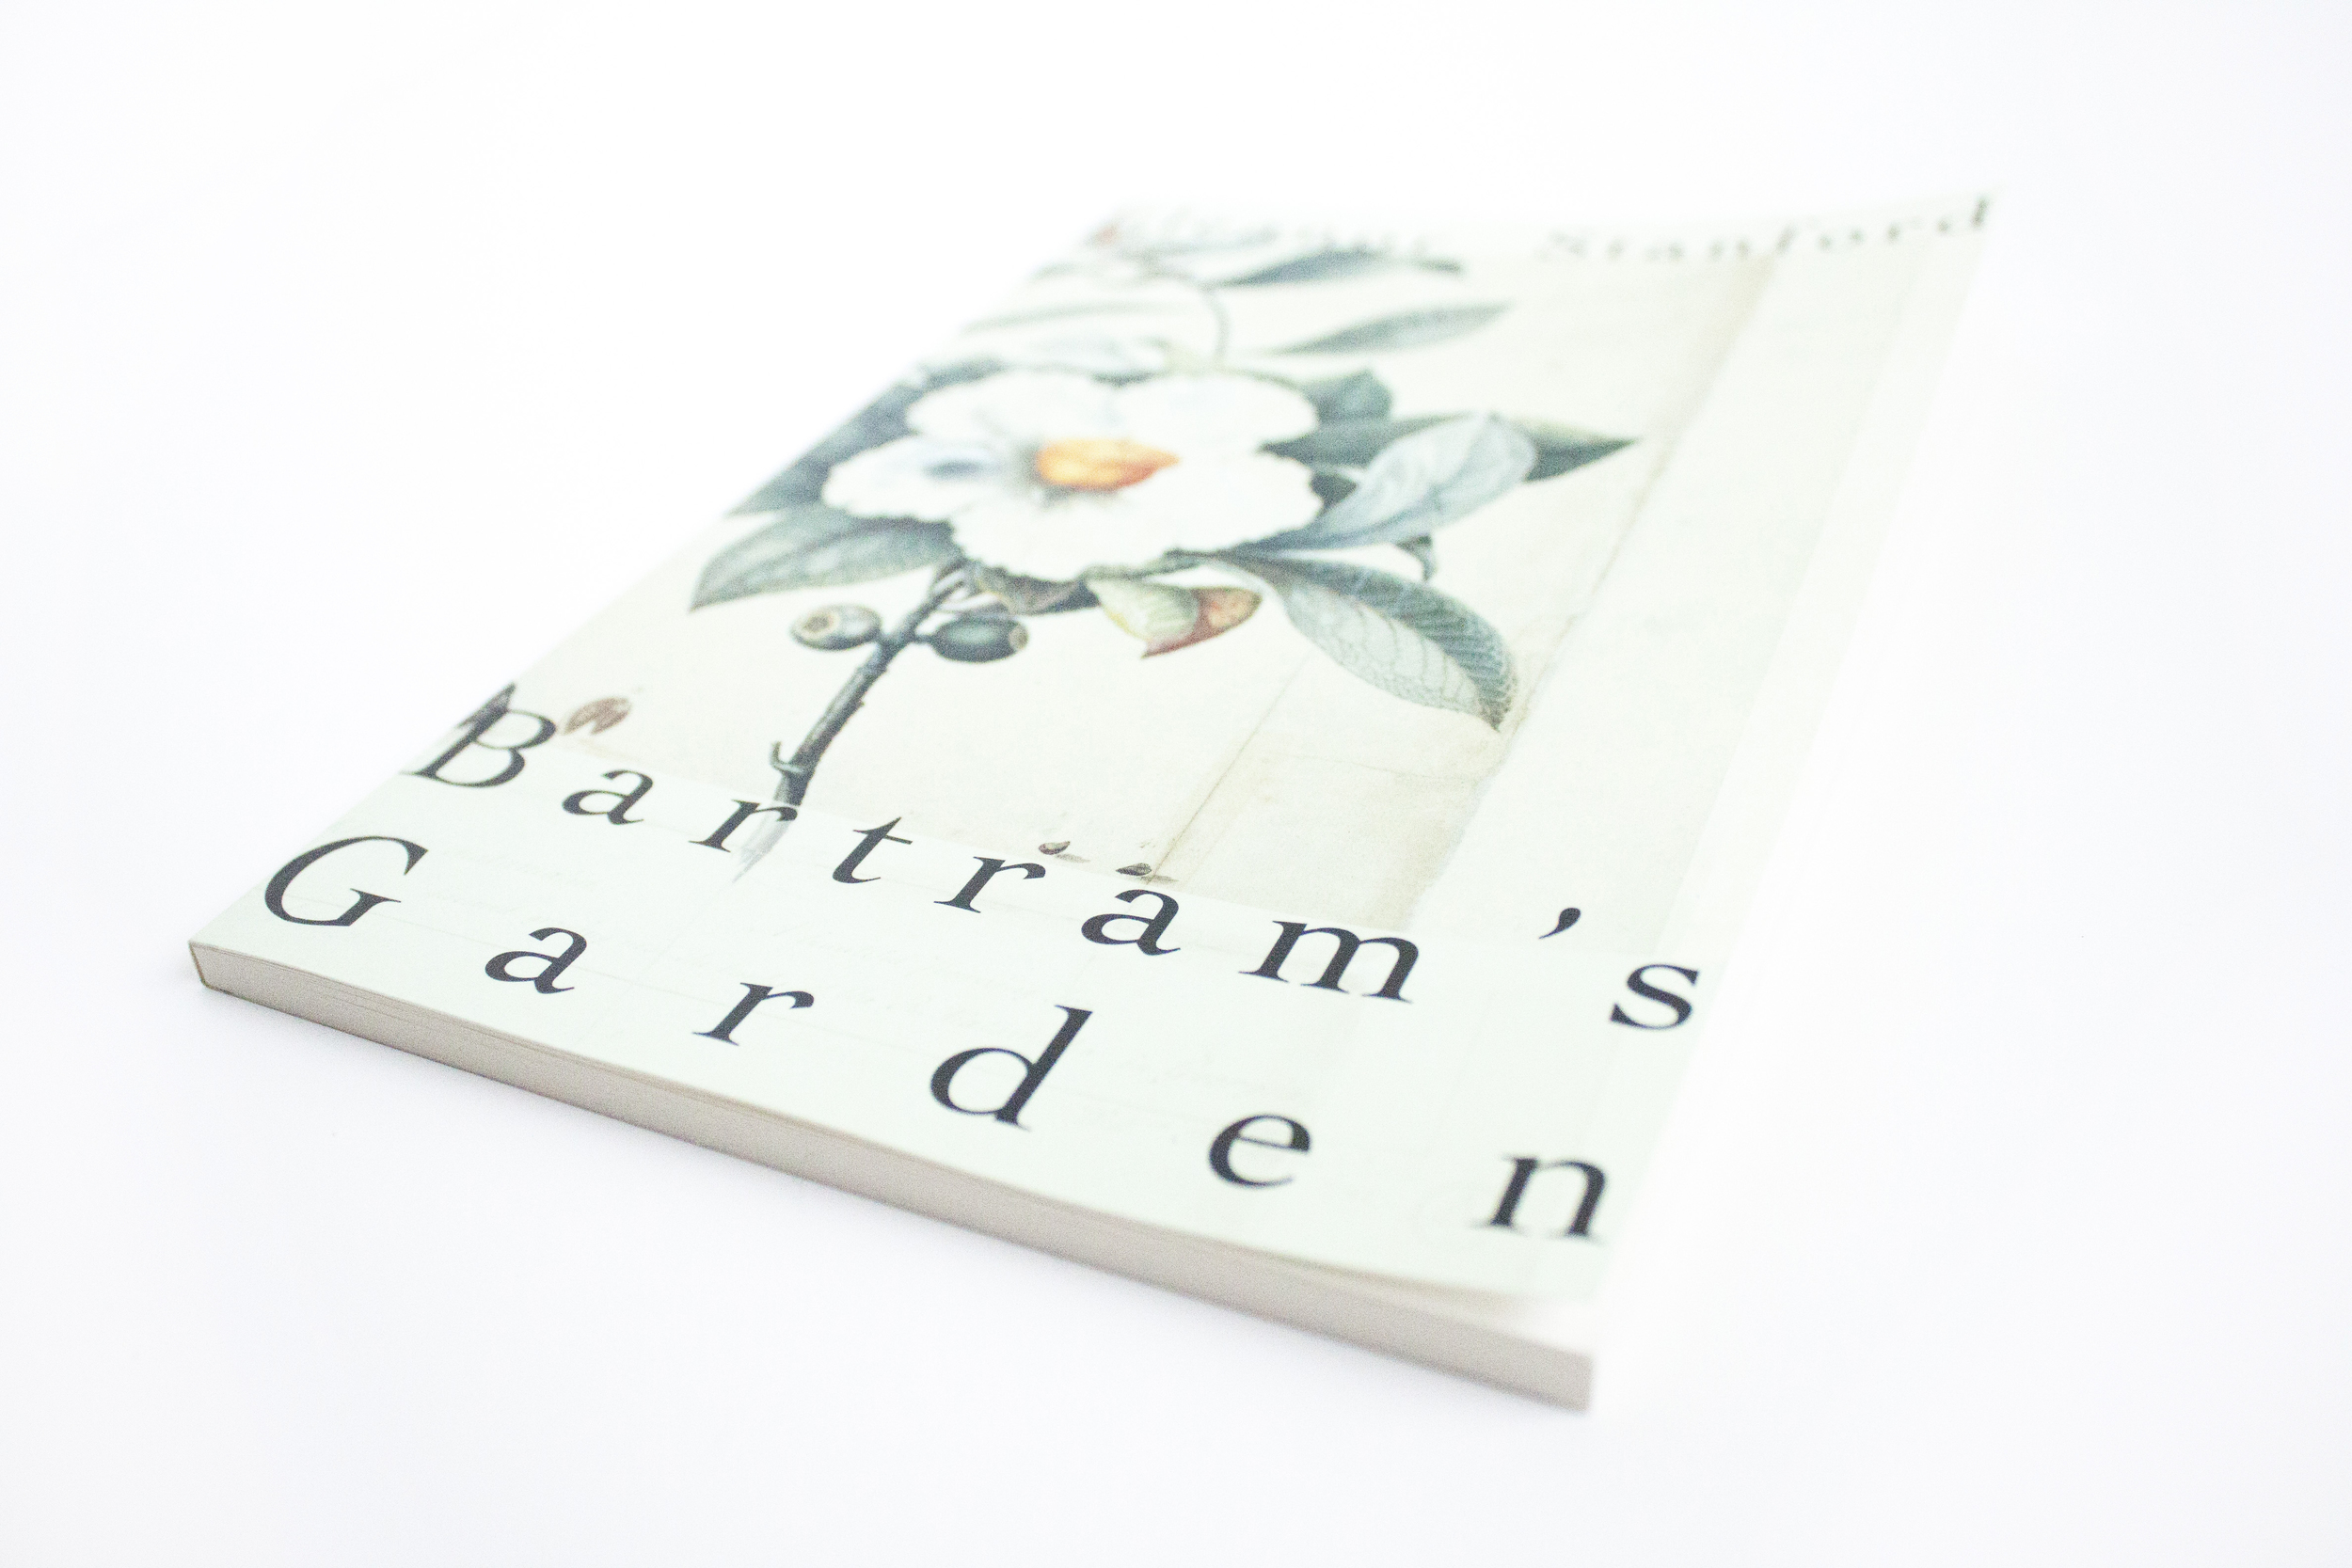 20150305 - Bartram's Garden04.JPG